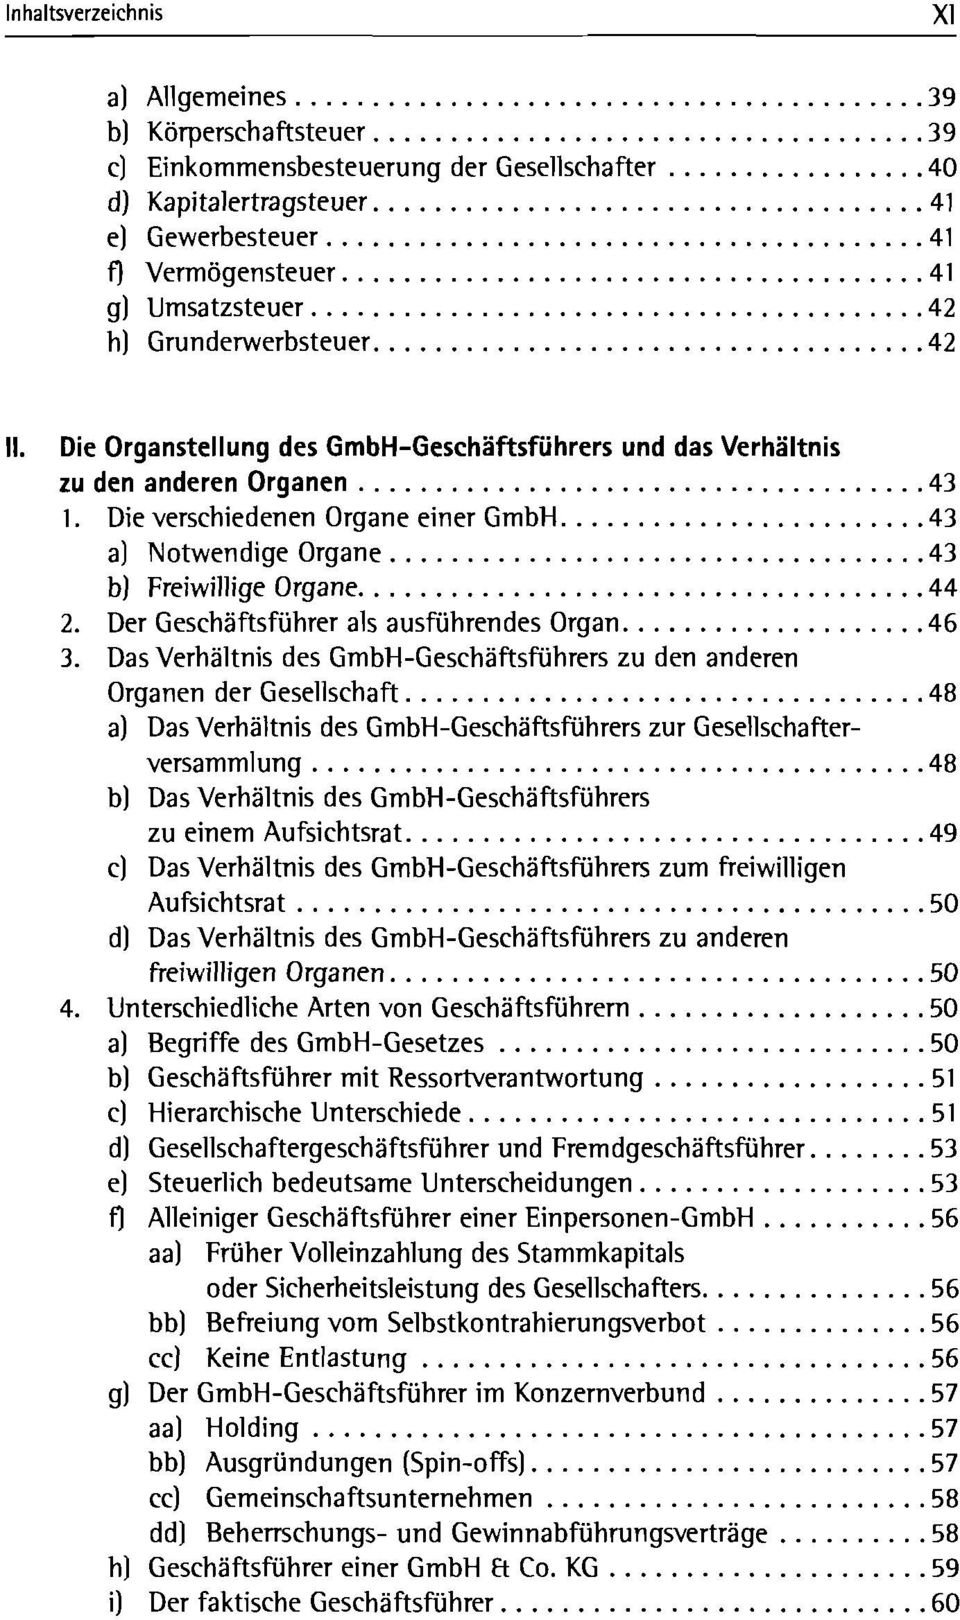 Die verschiedenen Organe einer GmbH 43 a) Notwendige Organe 43 b) Freiwillige Organe 44 2. Der Geschäftsführer als ausführendes Organ 46 3.